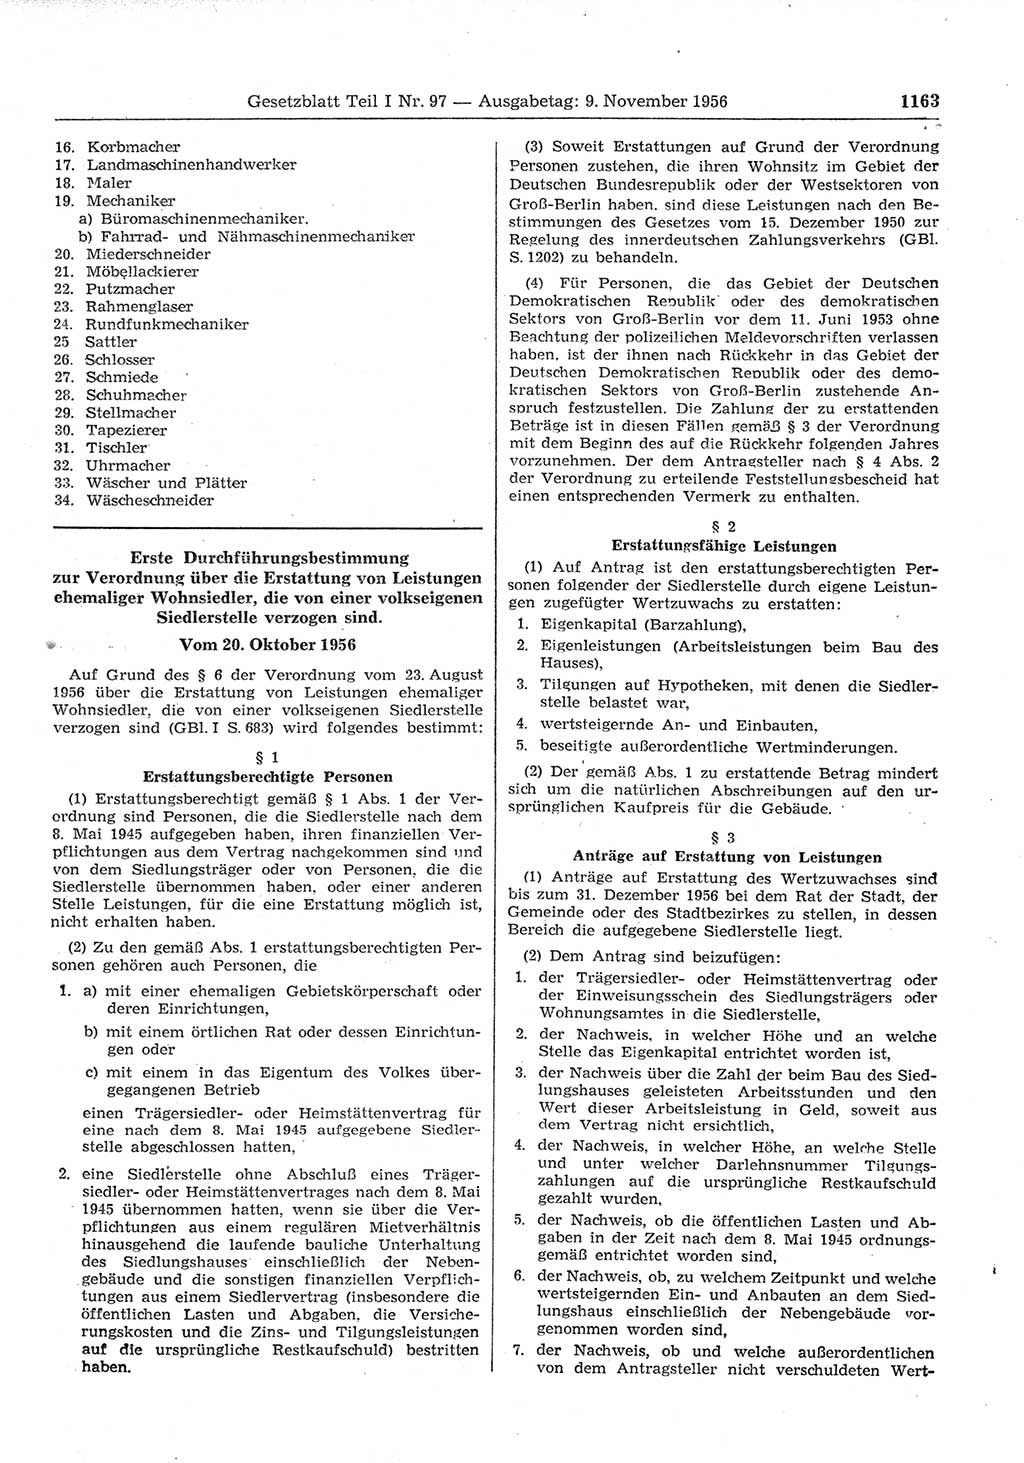 Gesetzblatt (GBl.) der Deutschen Demokratischen Republik (DDR) Teil Ⅰ 1956, Seite 1163 (GBl. DDR Ⅰ 1956, S. 1163)